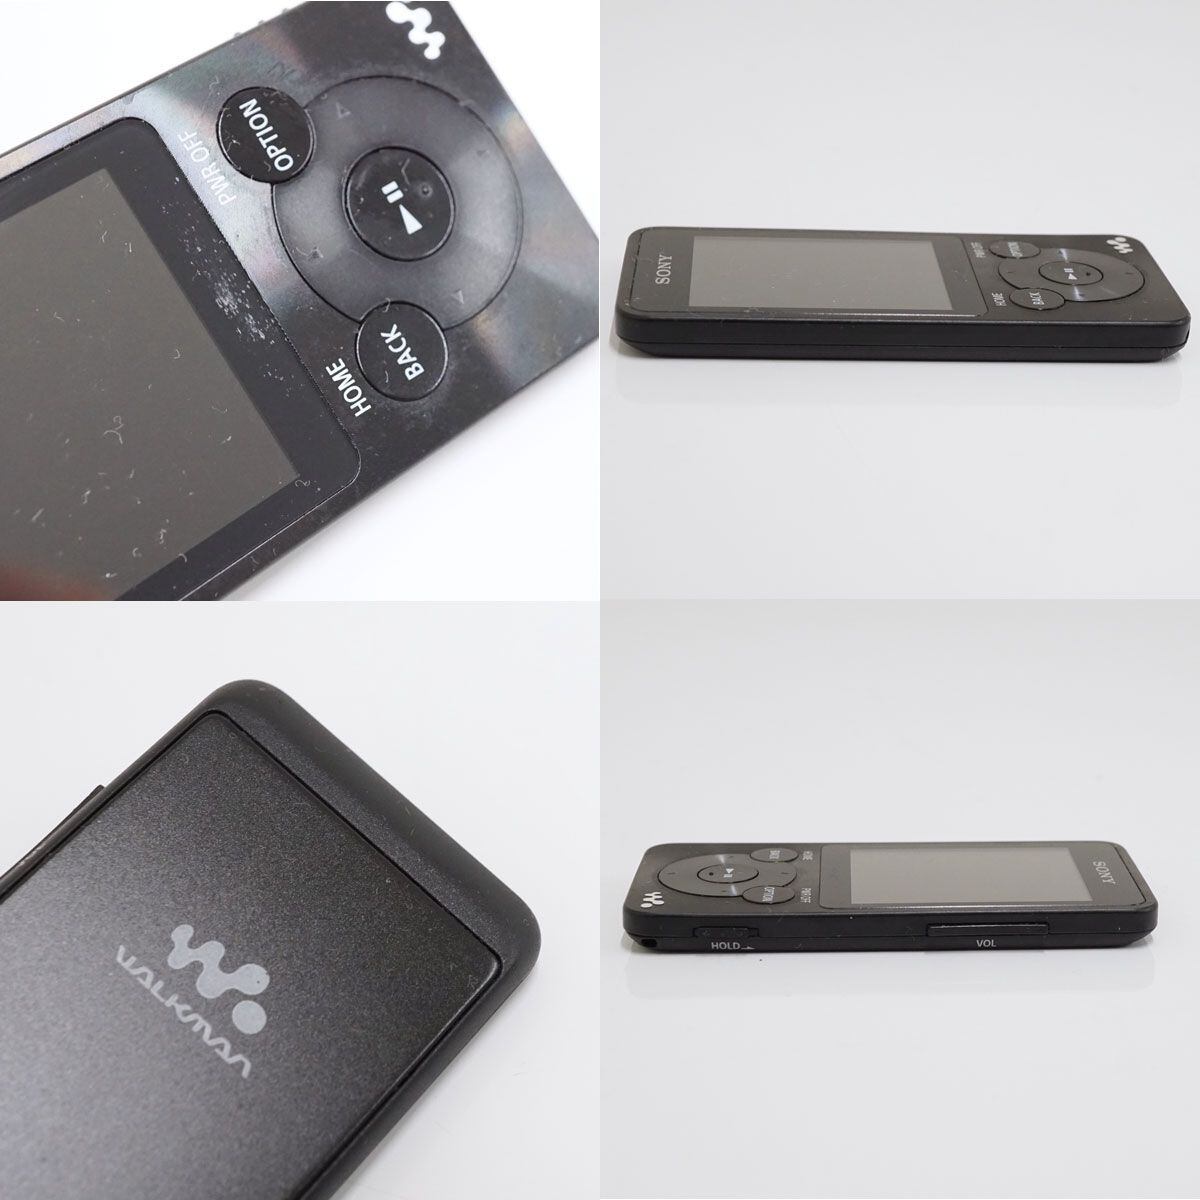 SONY ウォークマン NW-S785 16GB USED美品 本体のみ ブラック デジタルメディアプレーヤー Bluetooh対応 完動品 T V9112